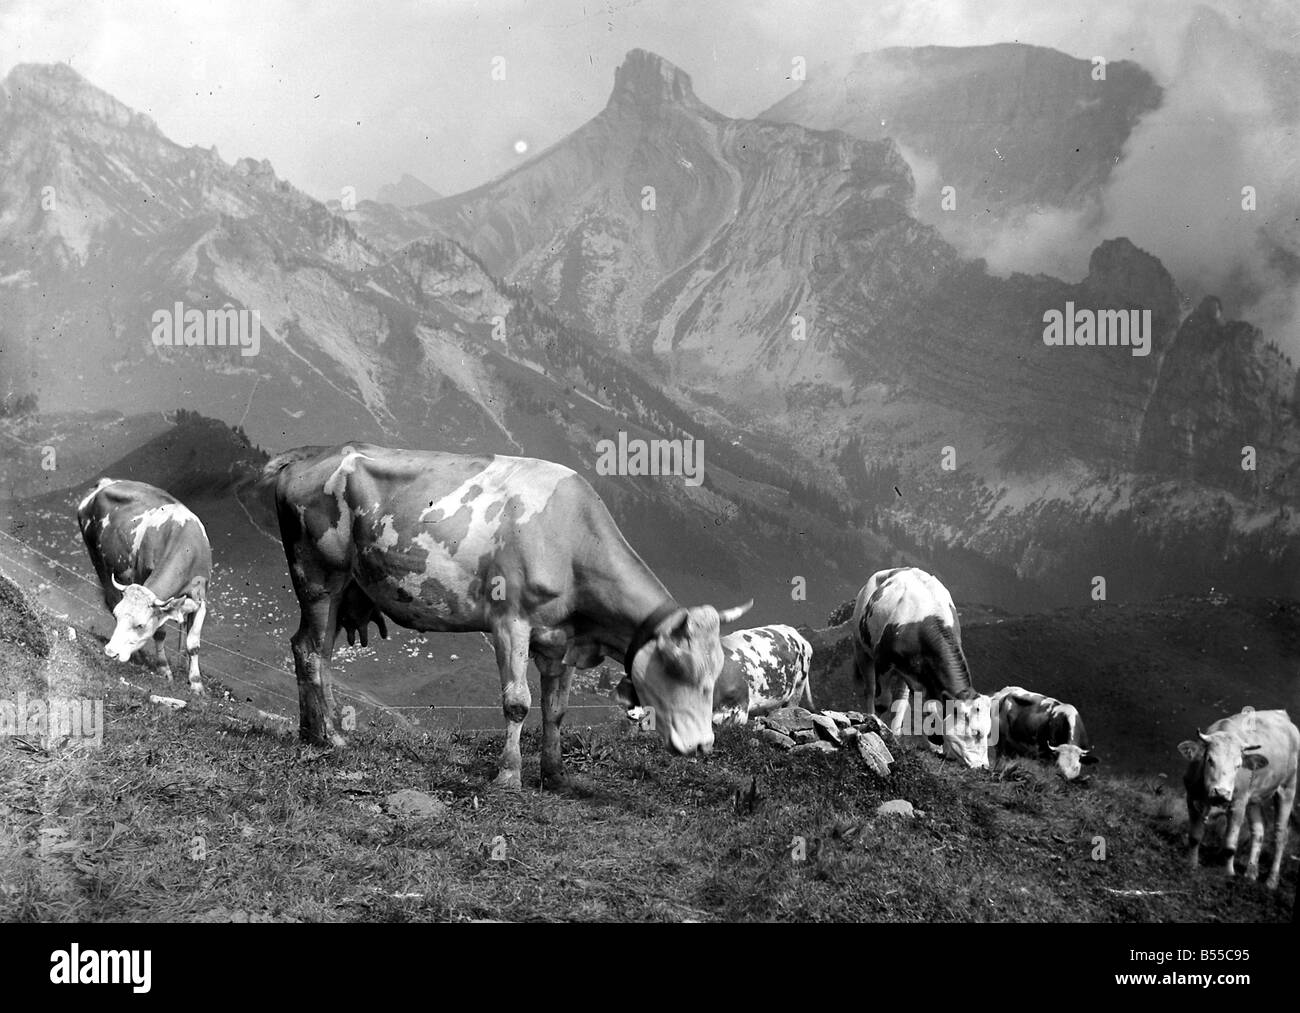 Le bétail sur les pentes de la montagne en Suisse Schynige Platte à&# 13 ;&# 10;Août 1929 &# 13 ;&# 10;Alf 185 Banque D'Images